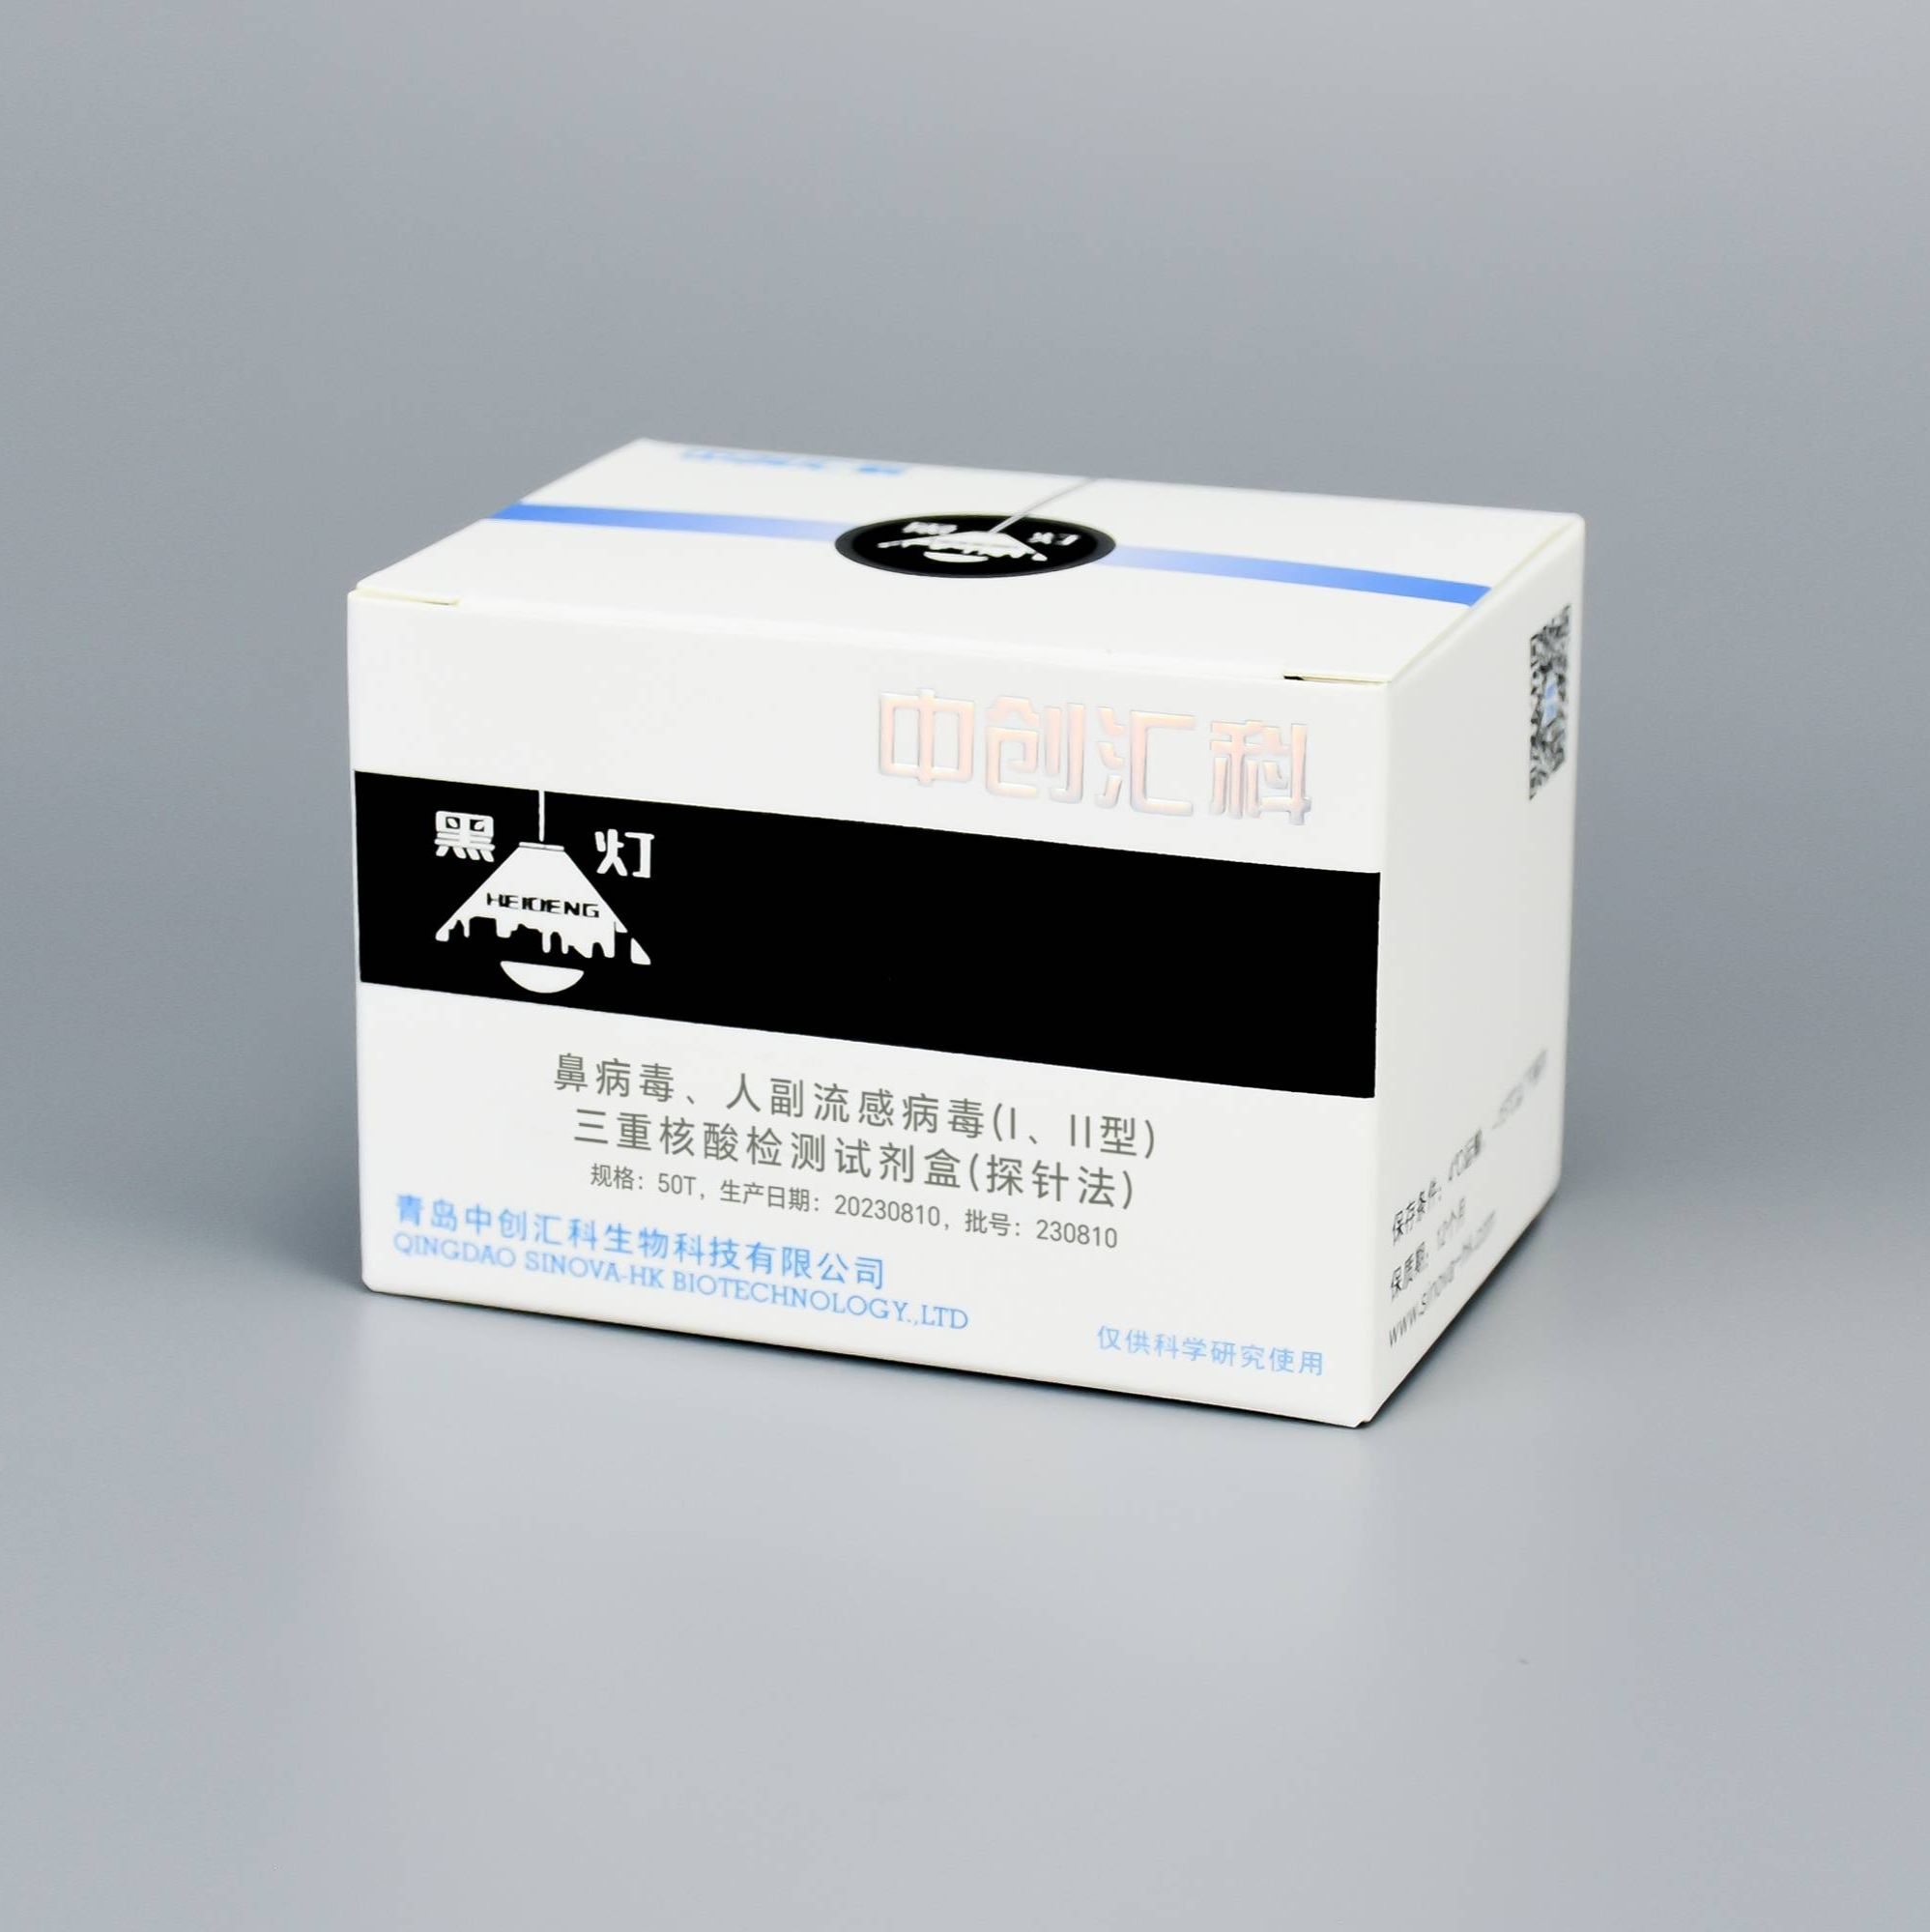 鼻病毒、人副流感病毒(I、II型)三重核酸检测试剂盒(探针法)